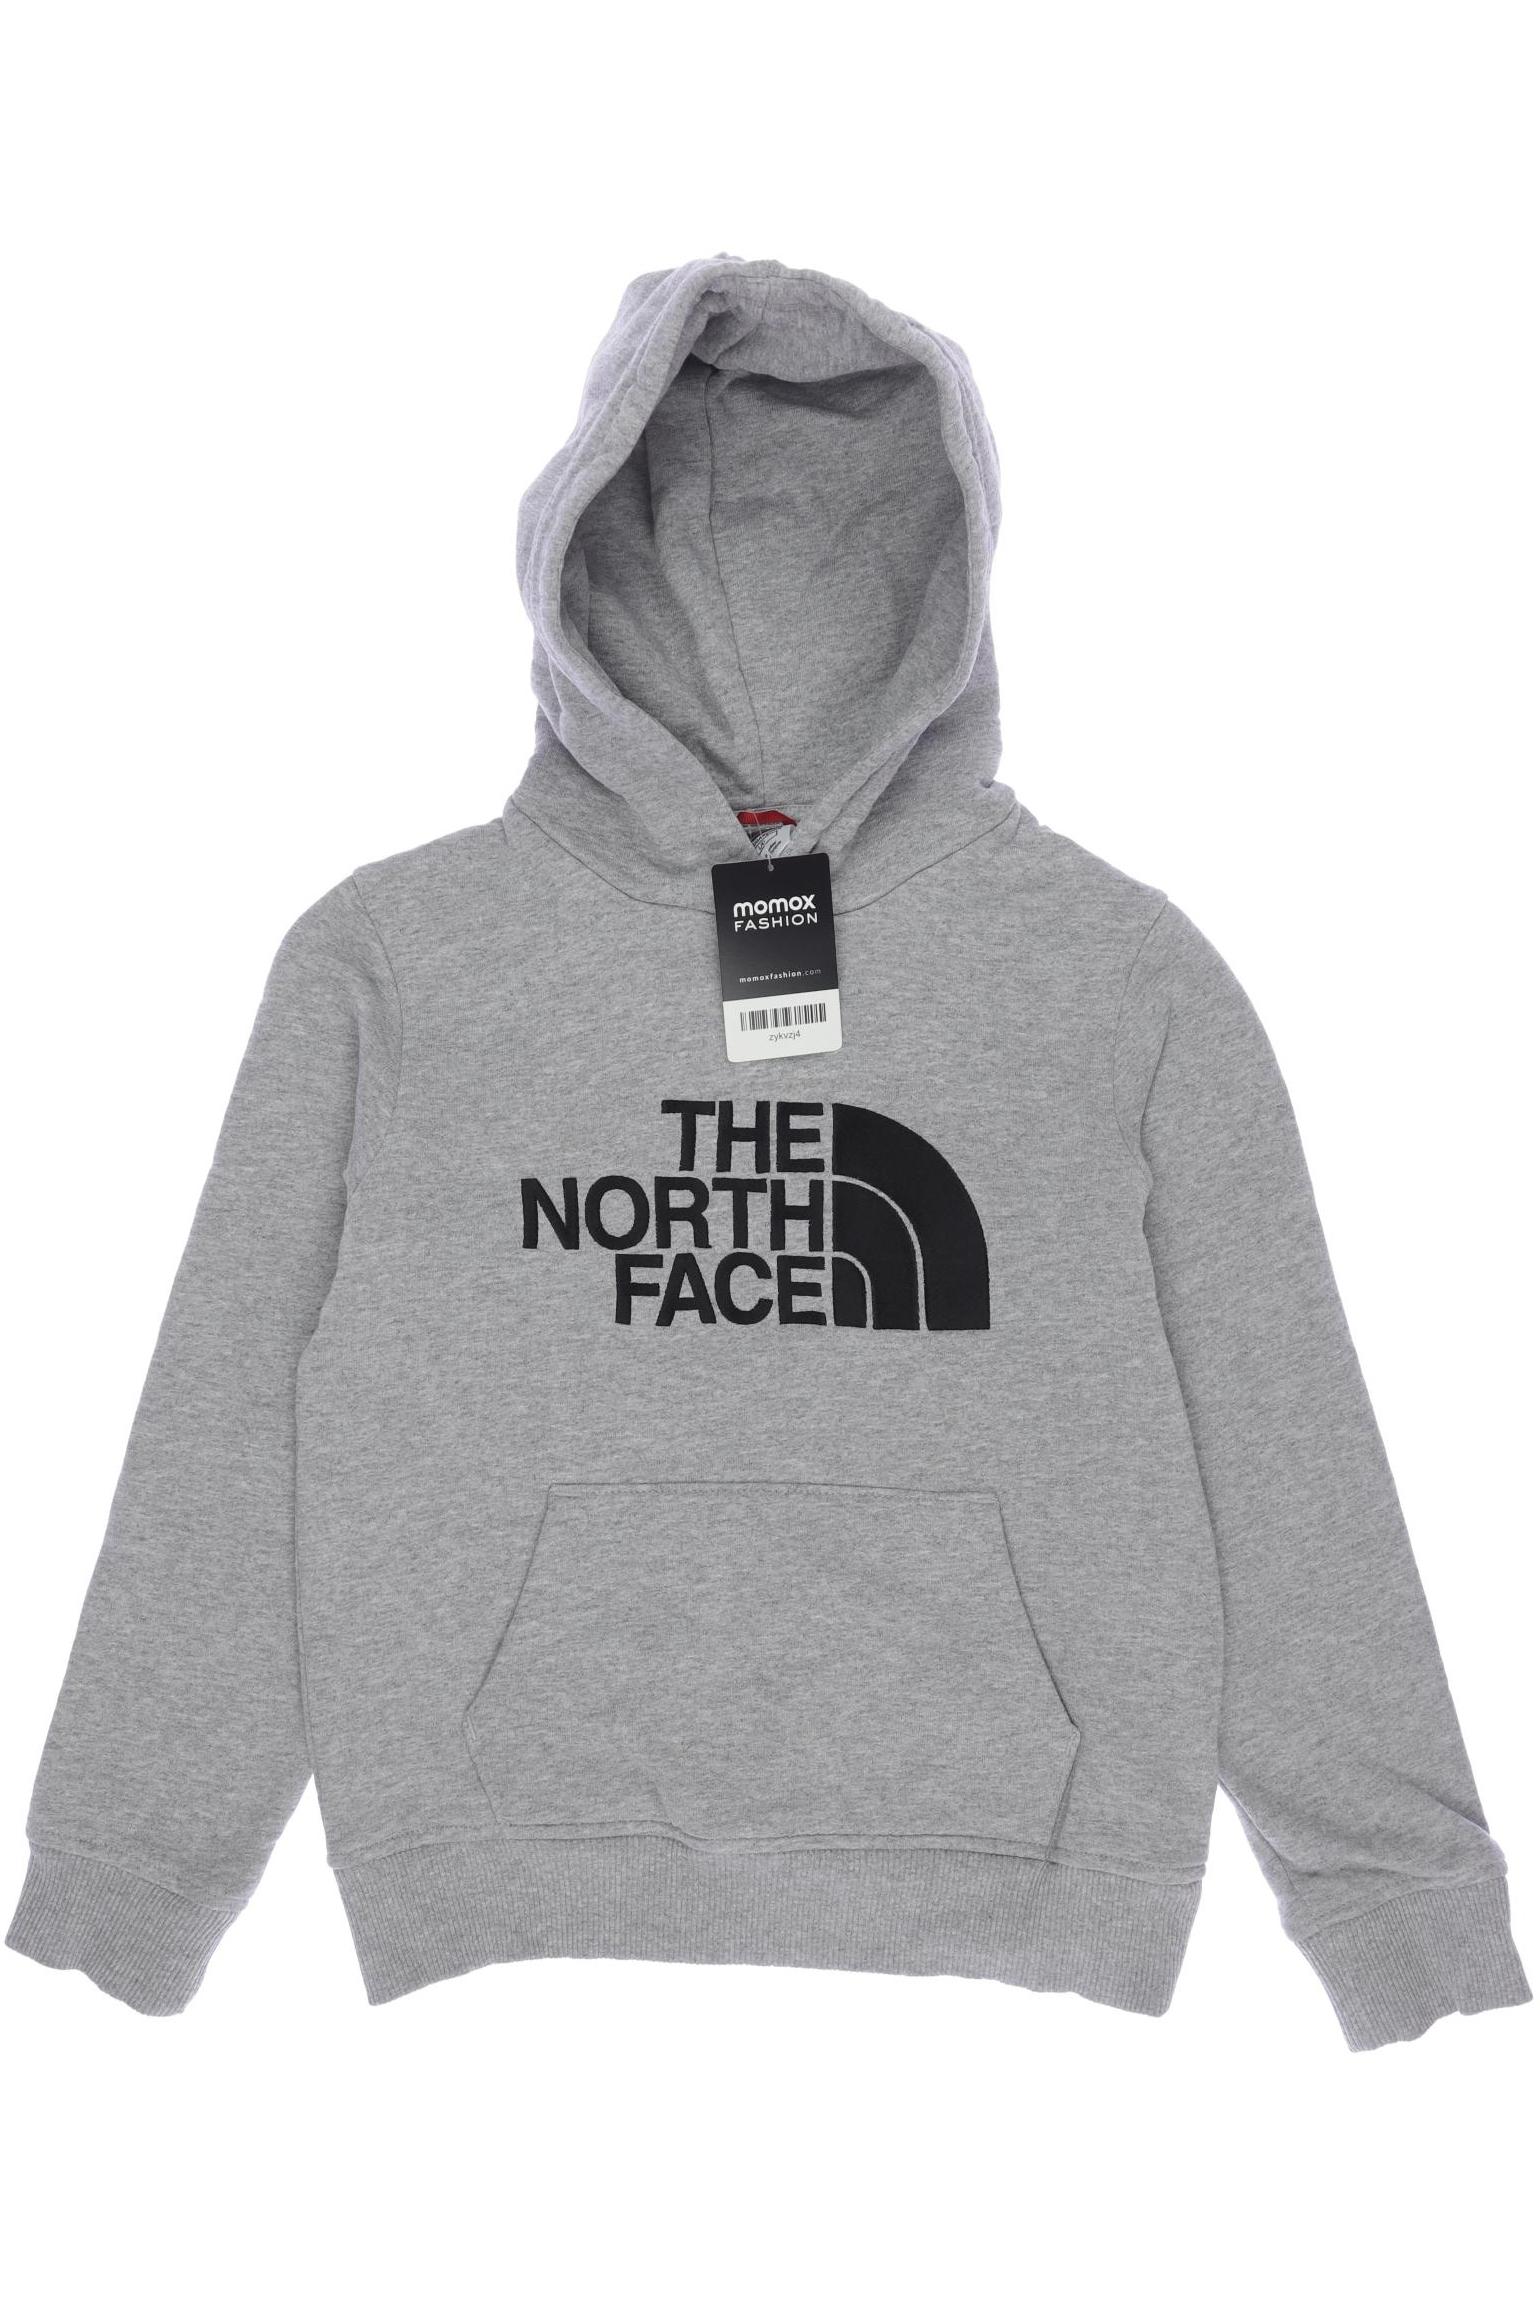 The North Face Herren Hoodies & Sweater, grau, Gr. 158 von The North Face